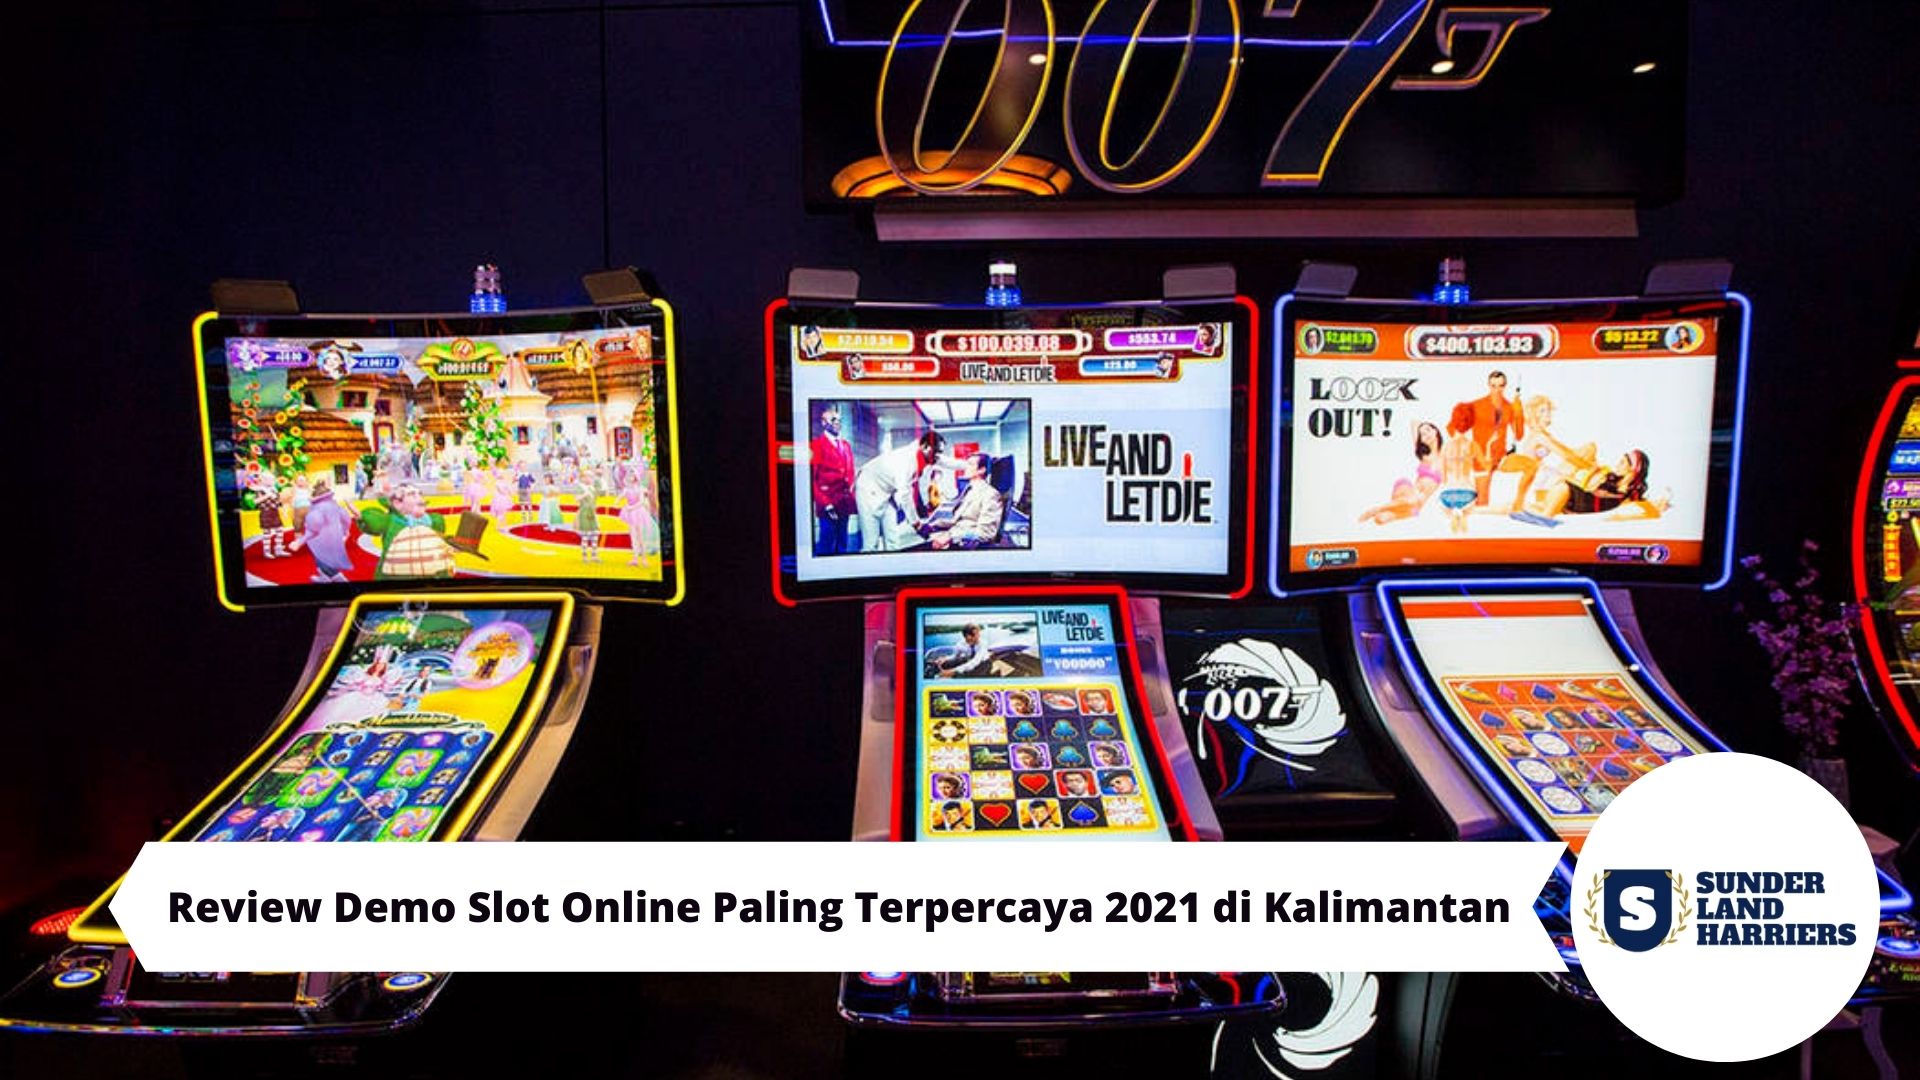 Review Demo Slot Online Paling Terpercaya 2021 di Kalimantan